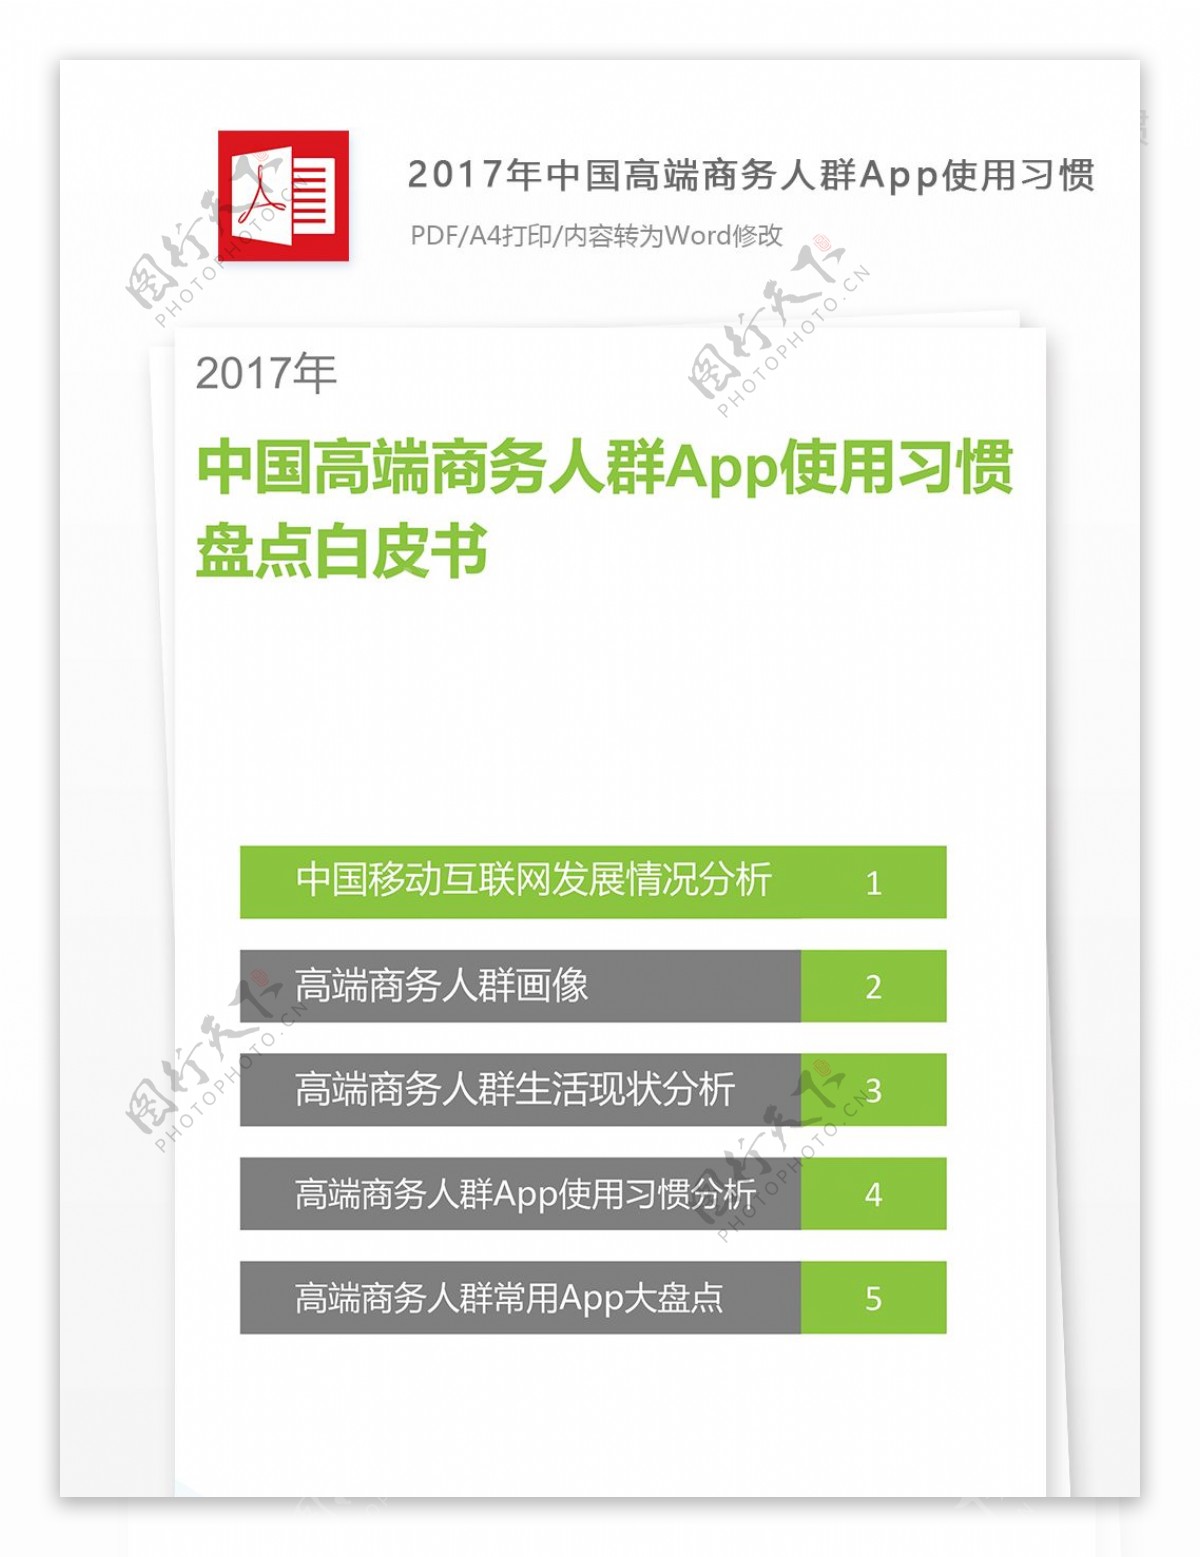 2017年中国高端商务人群App使用习惯